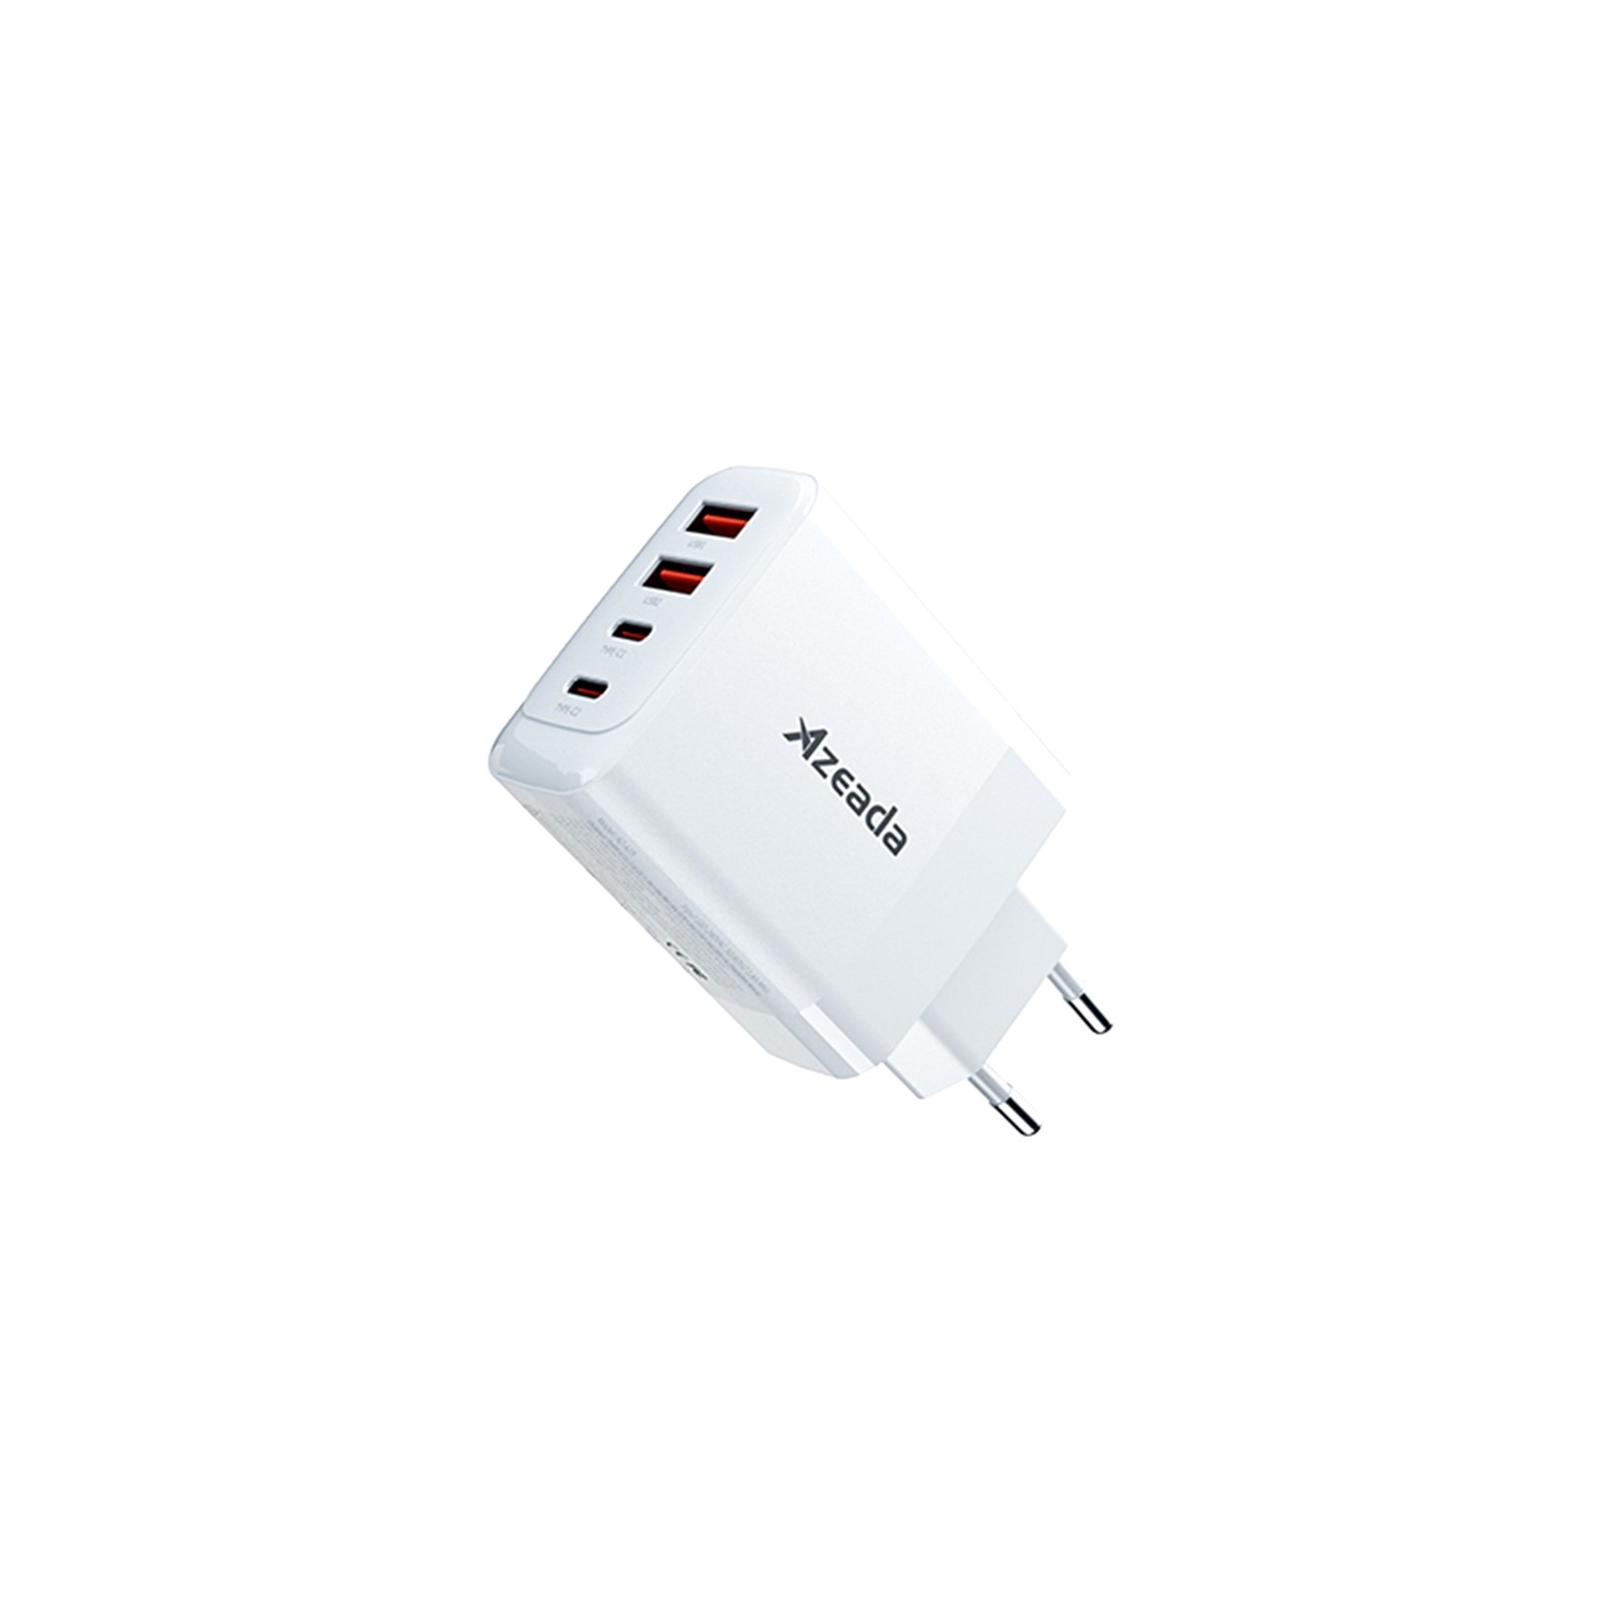 Зарядний пристрій Proda AZEADA Seagulls AZ-19 GaN5 65W USB-A (QC4.0) USB-C (PD3.0) white (AZ-19-WH)